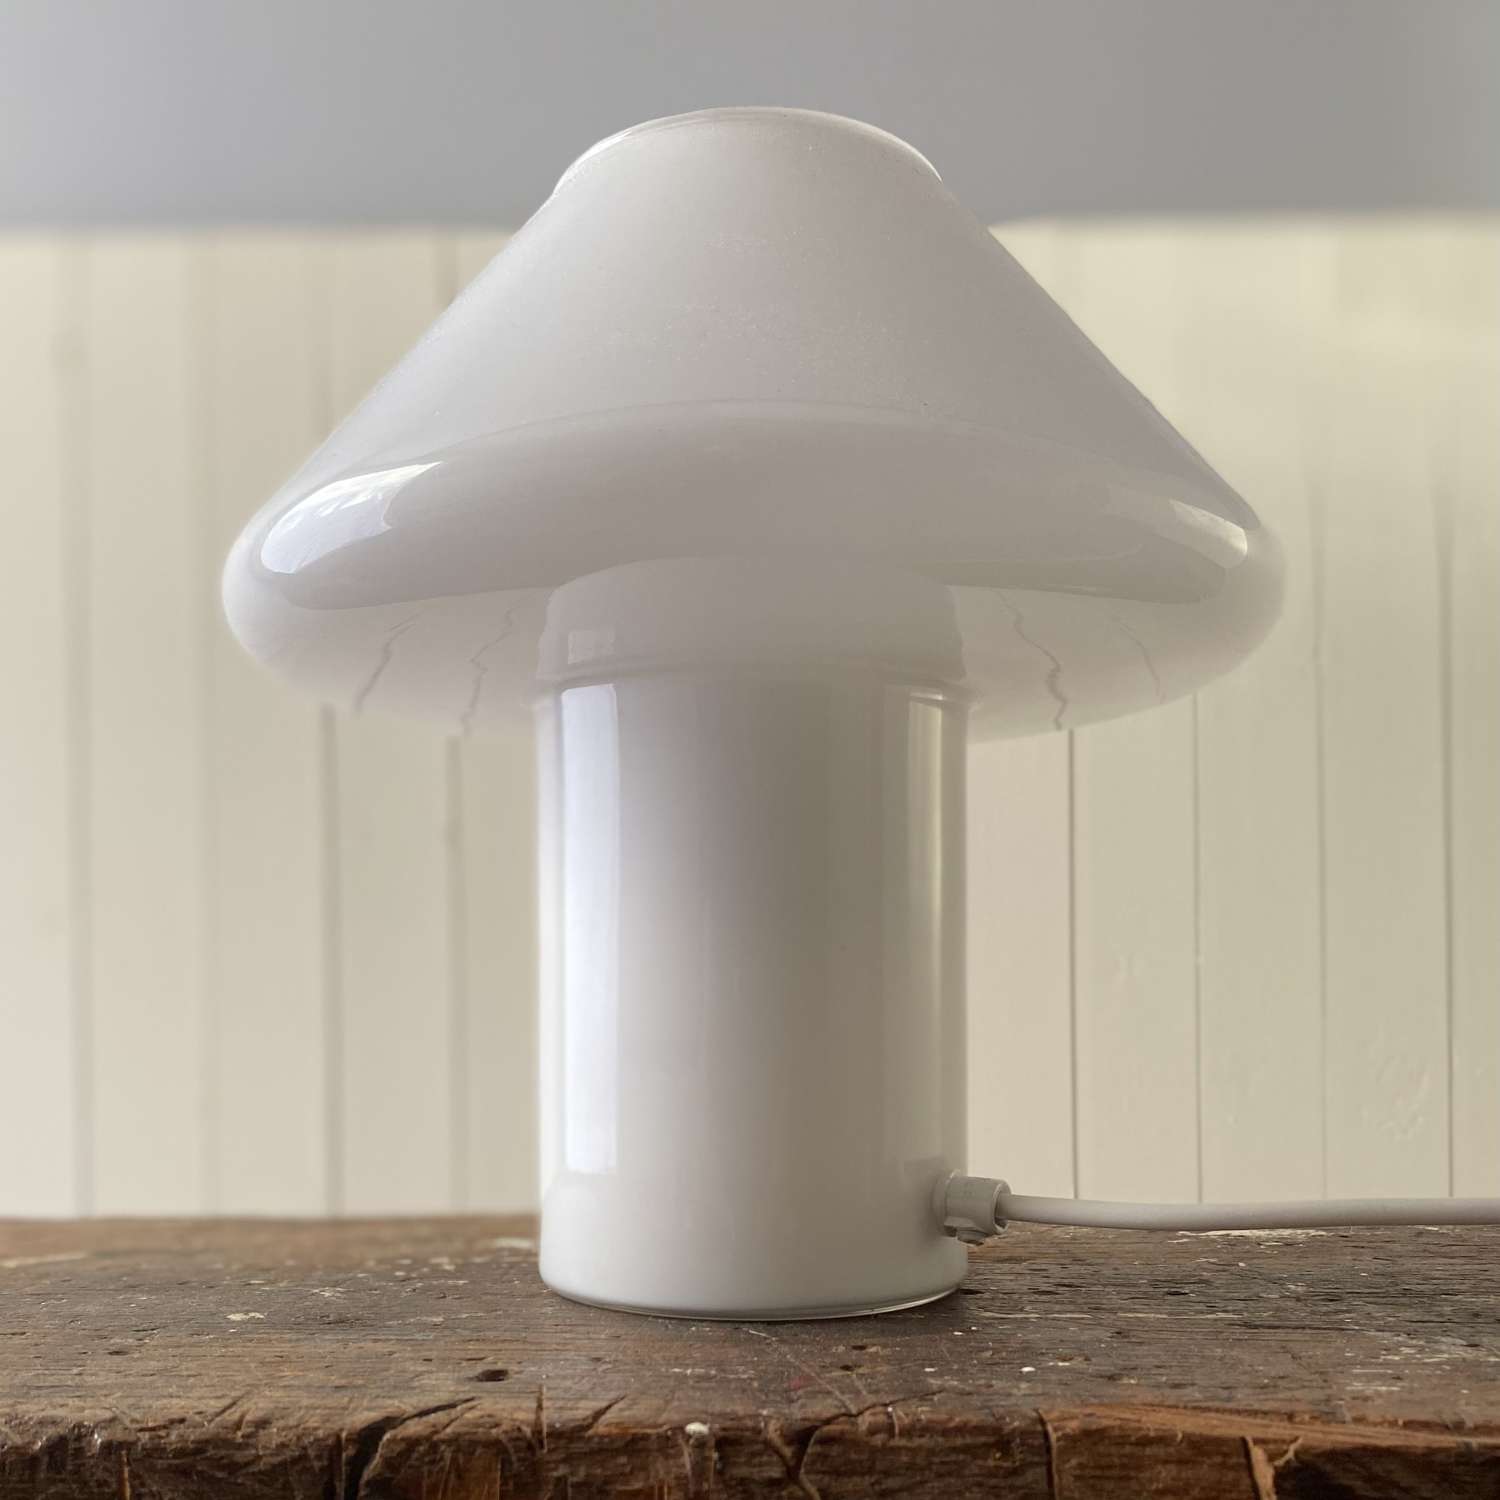 Vintage glass mushroom lamp - Hala Zeist